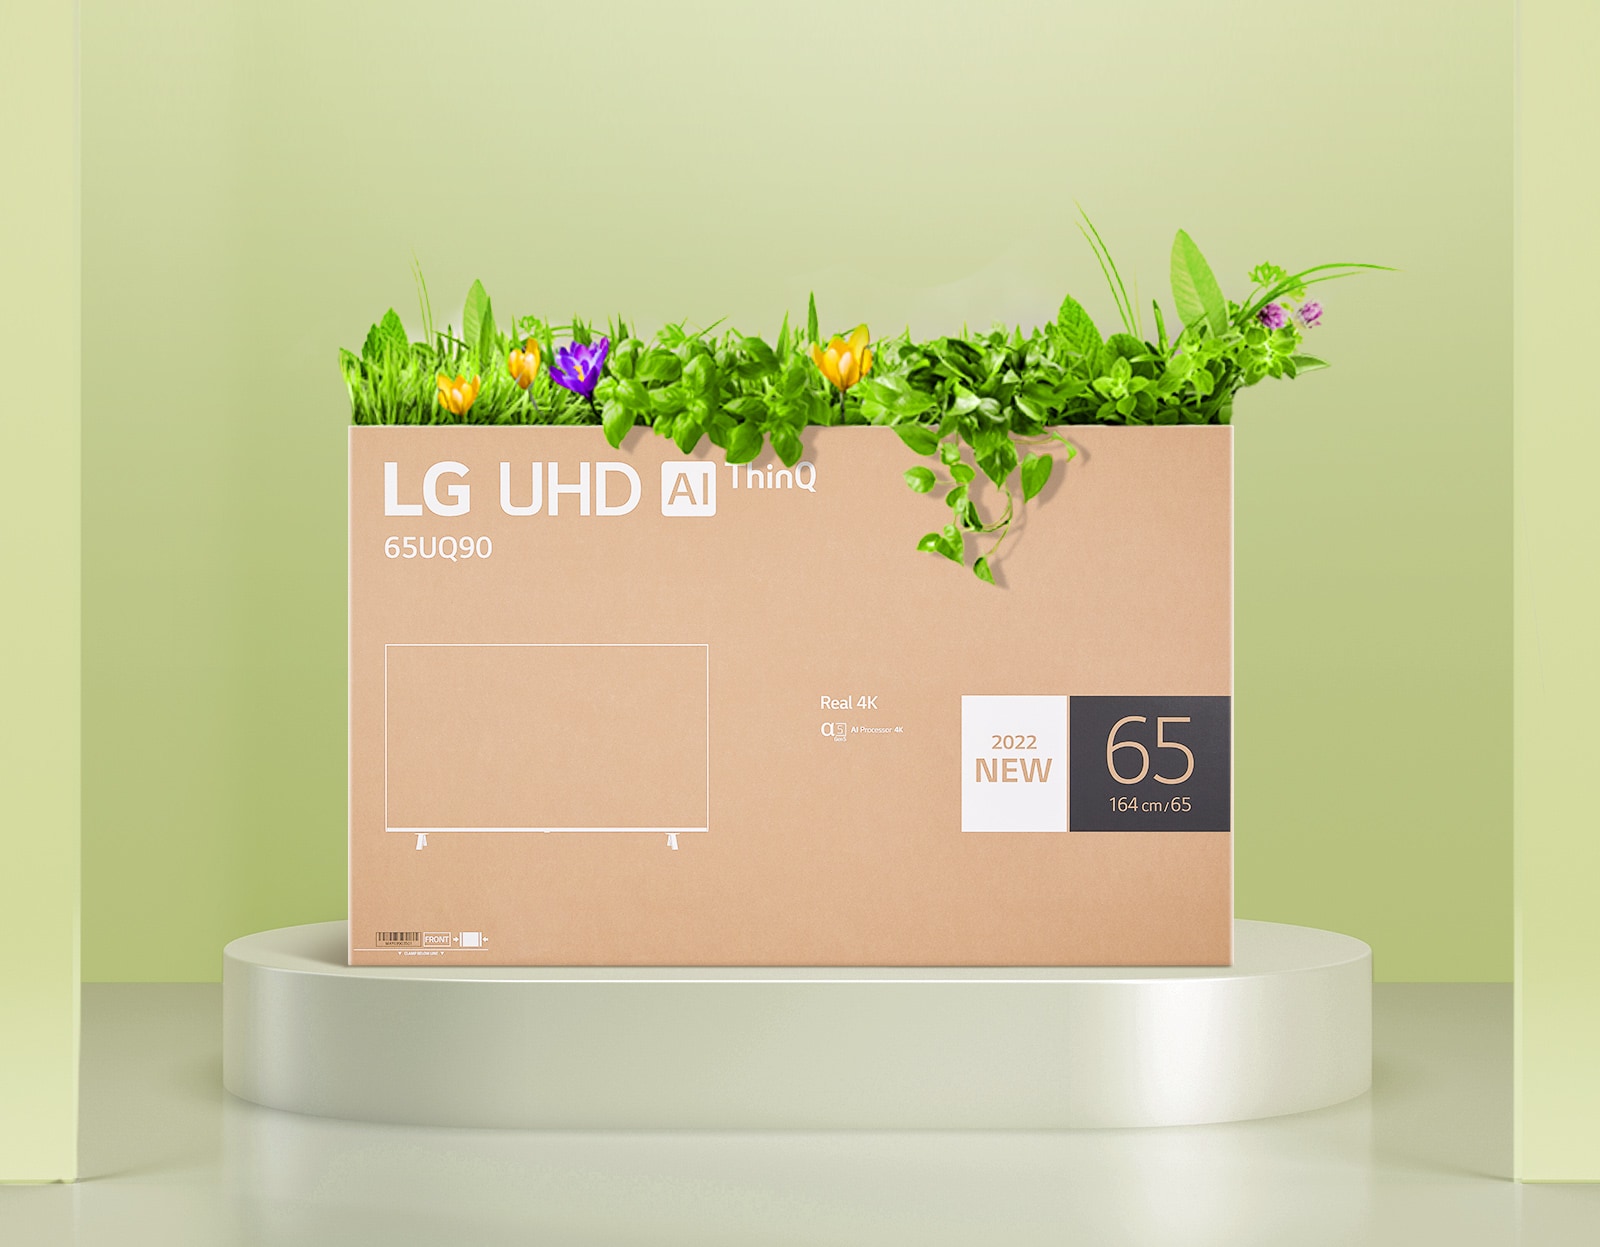 Kutija iz koje izlazi cveće iz ambalaže LG UHD monitora unapređenog kvaliteta.